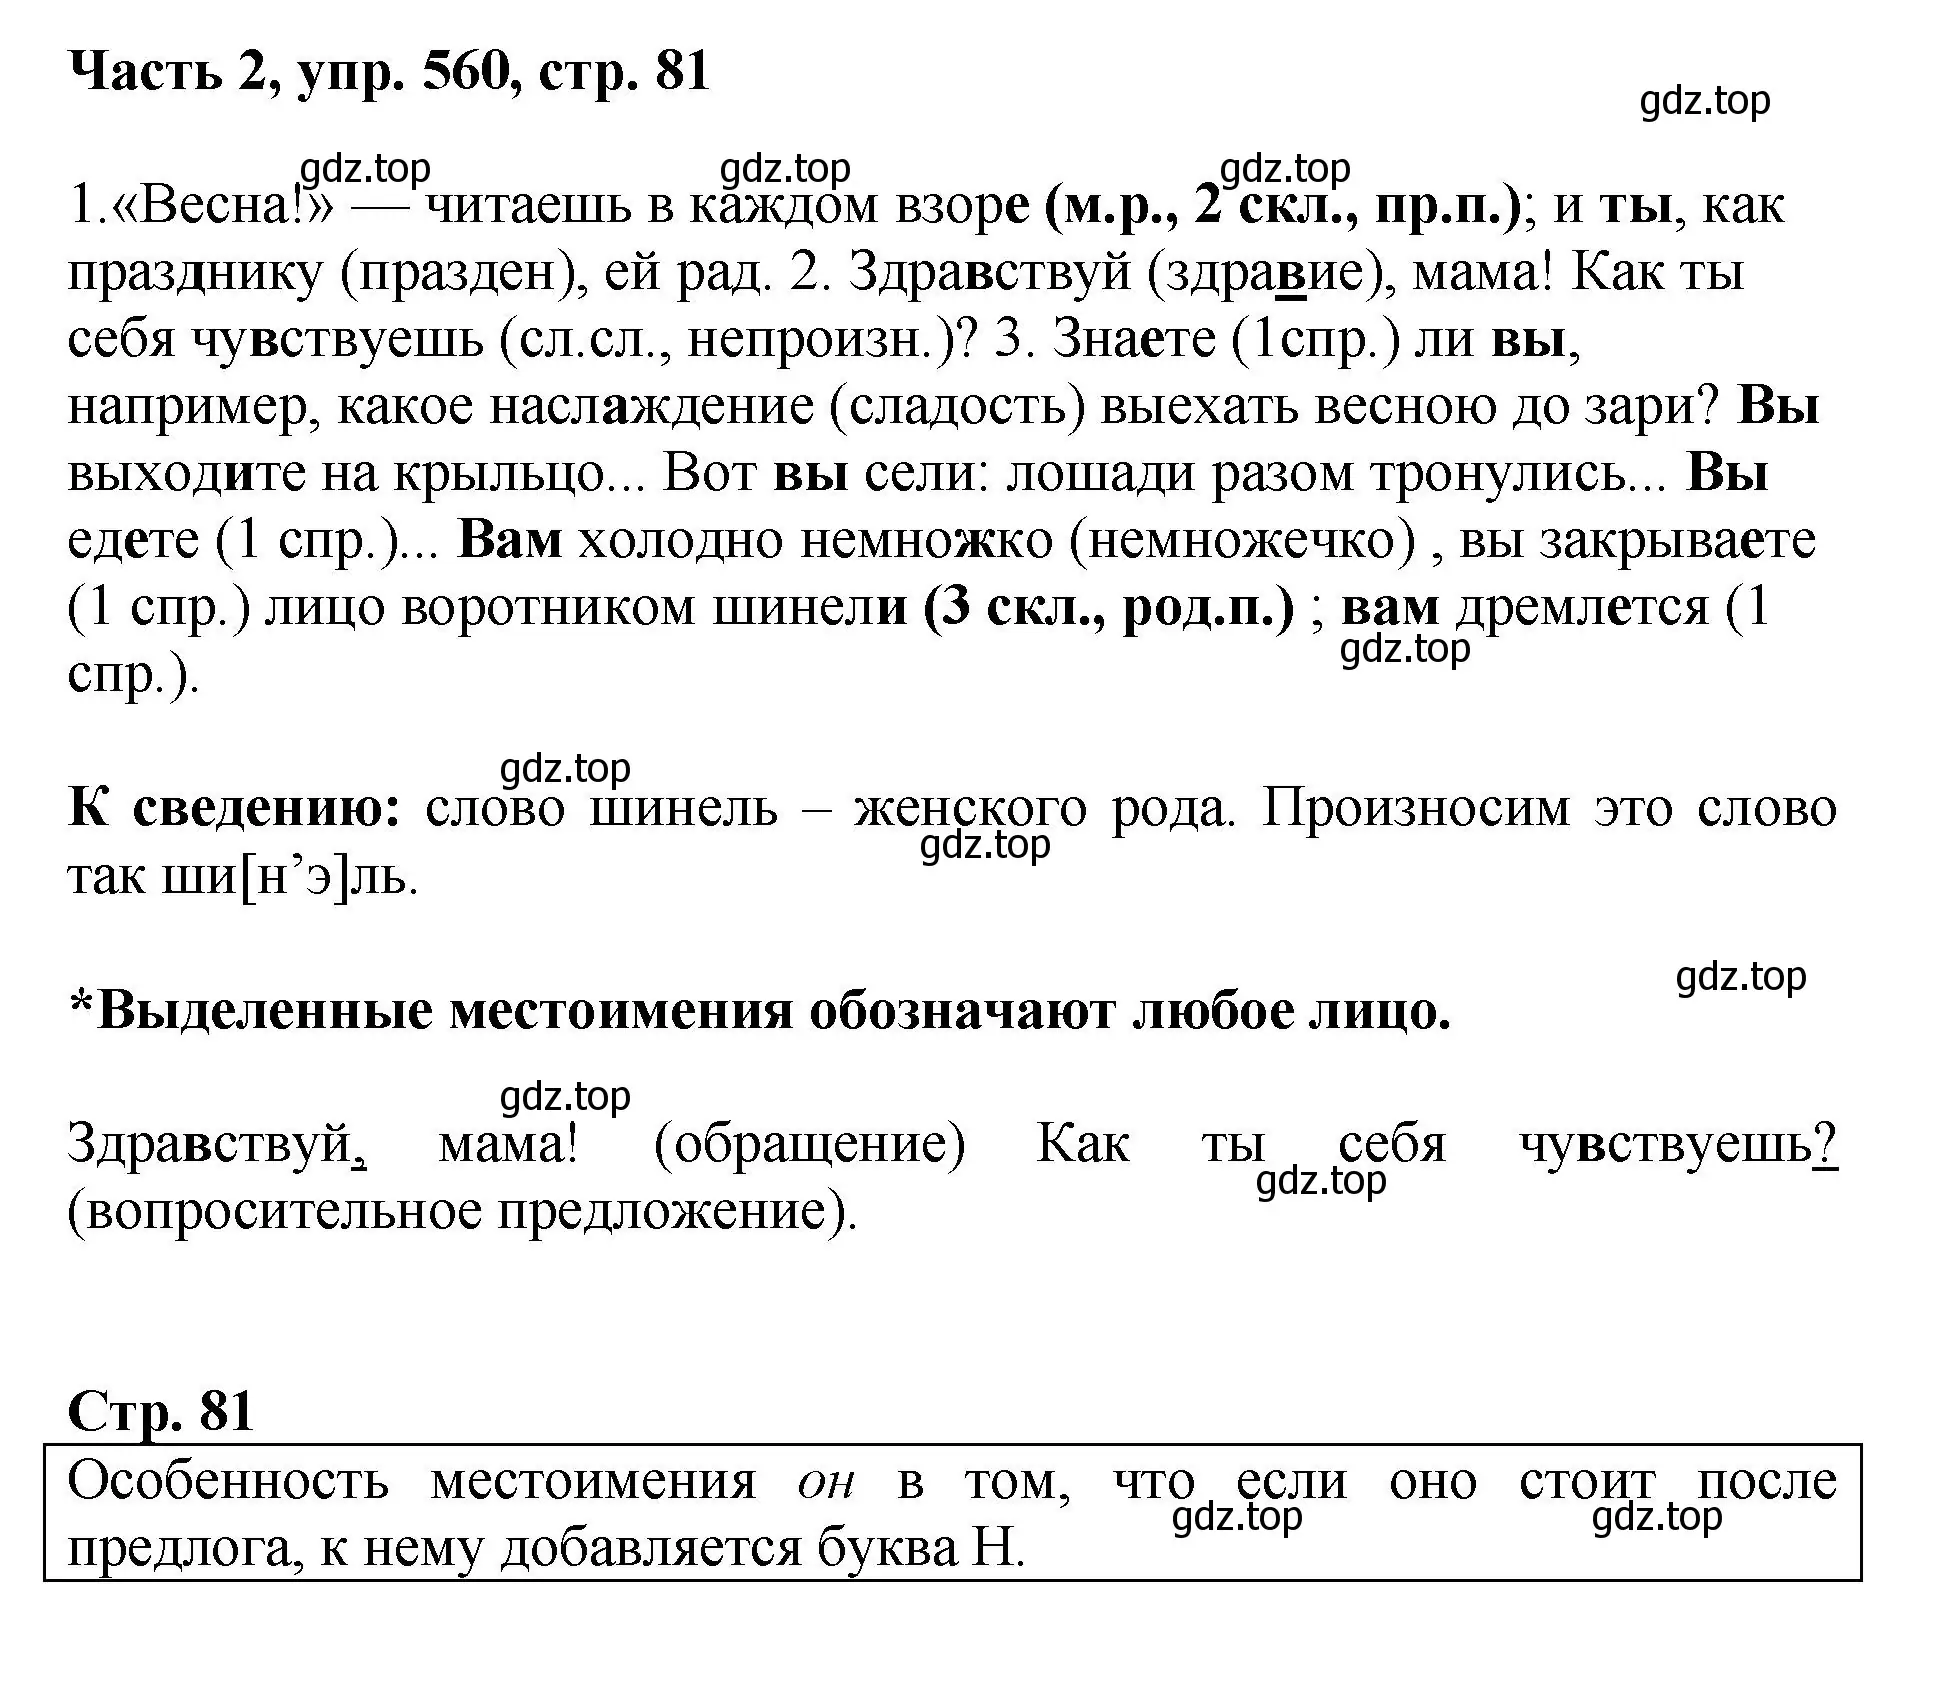 Решение номер 560 (страница 81) гдз по русскому языку 6 класс Баранов, Ладыженская, учебник 2 часть